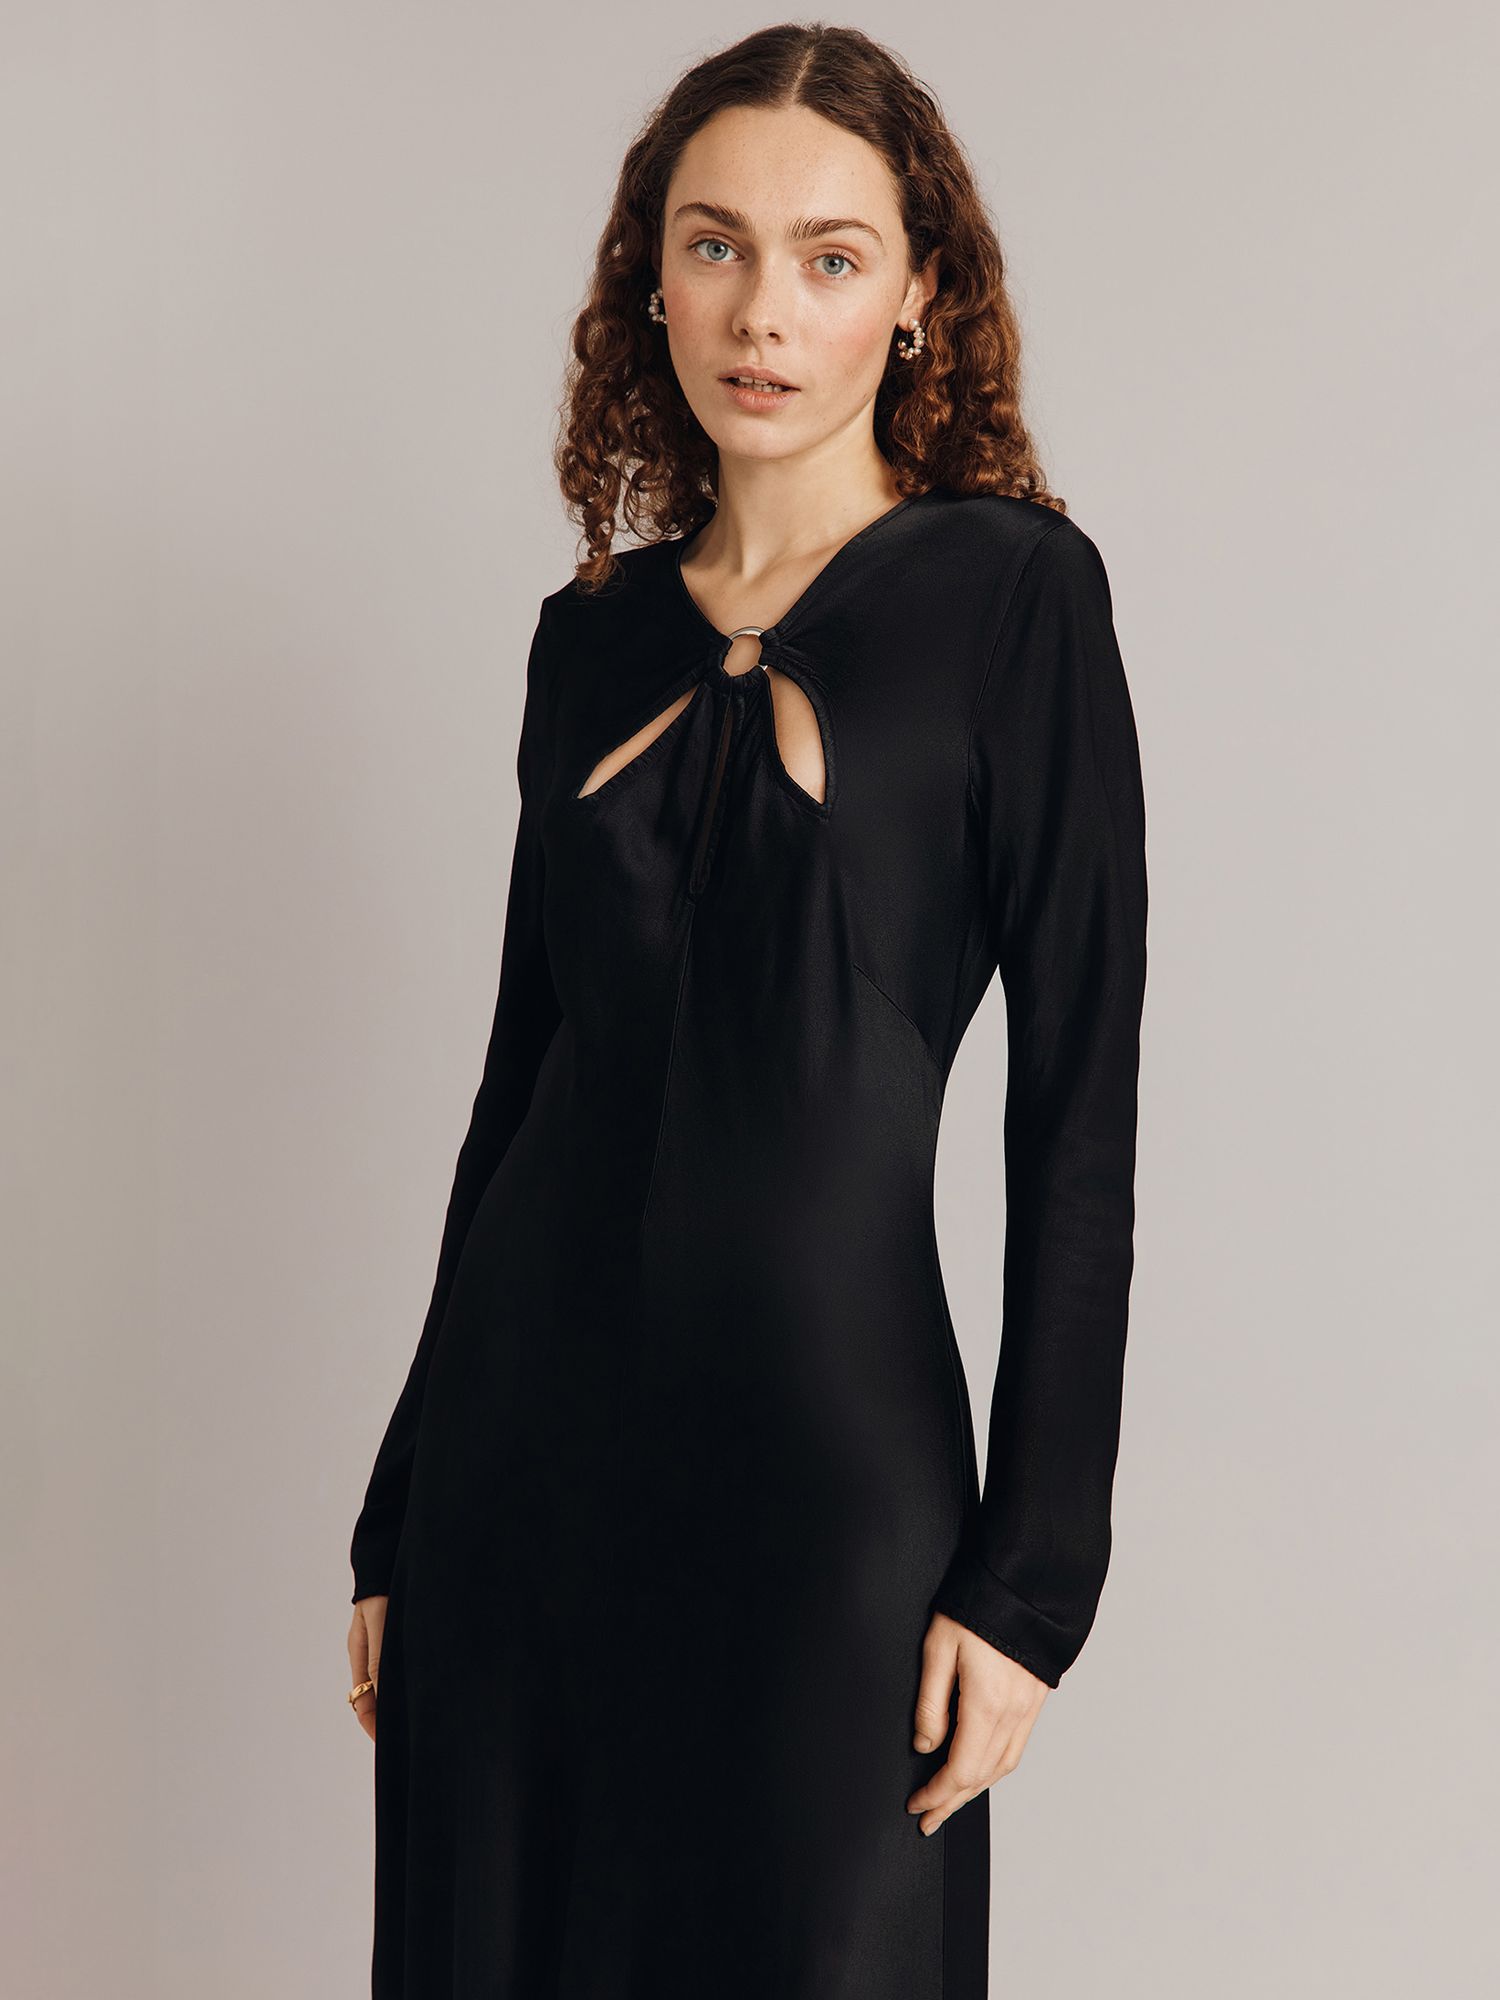 Ghost Freya Cut-Out Detail Satin Midi Dress, Black, XS